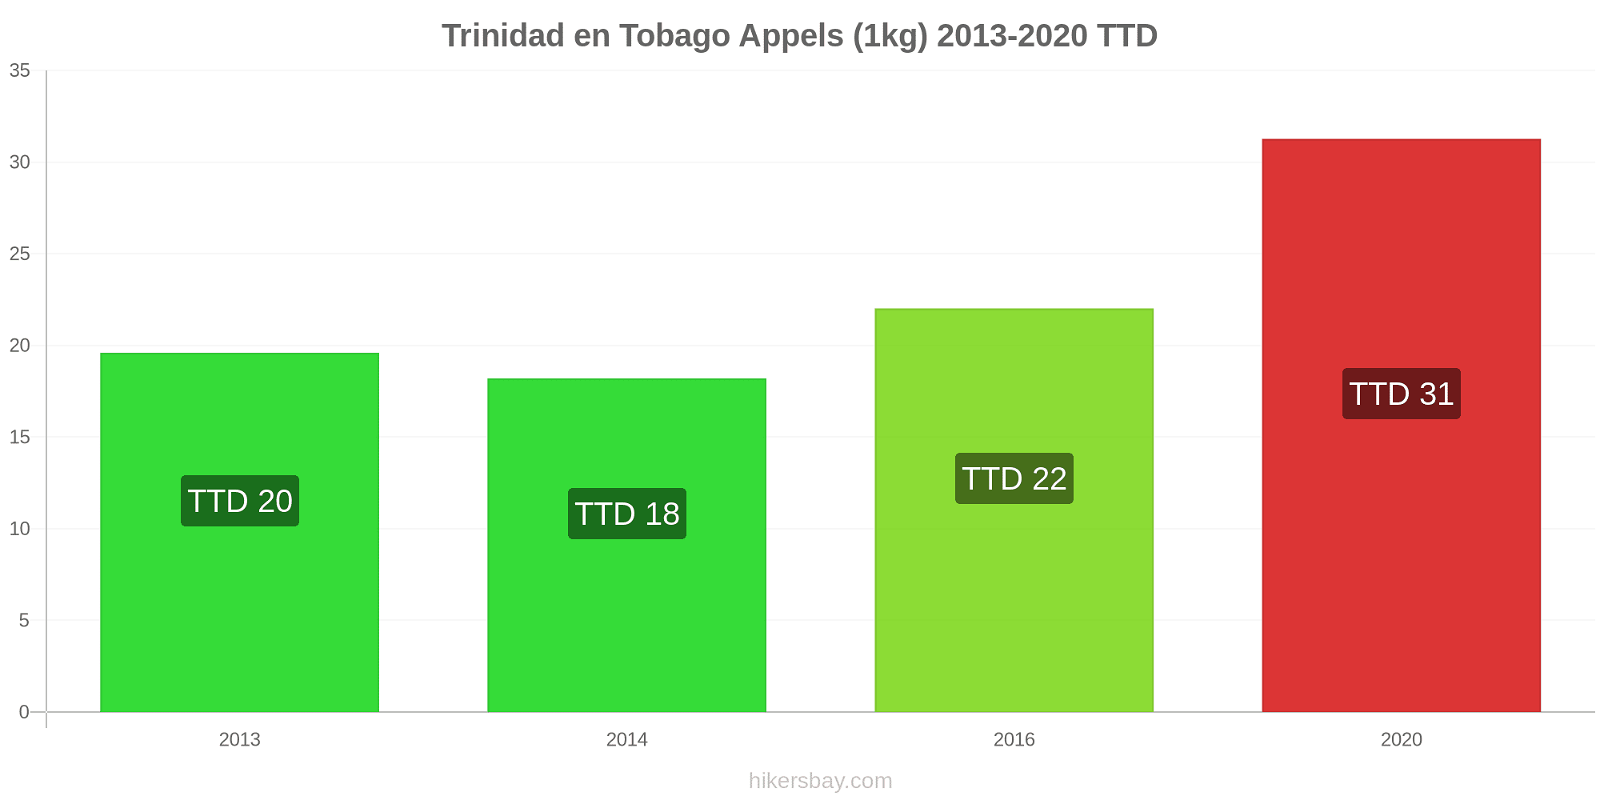 Trinidad en Tobago prijswijzigingen Appels (1kg) hikersbay.com